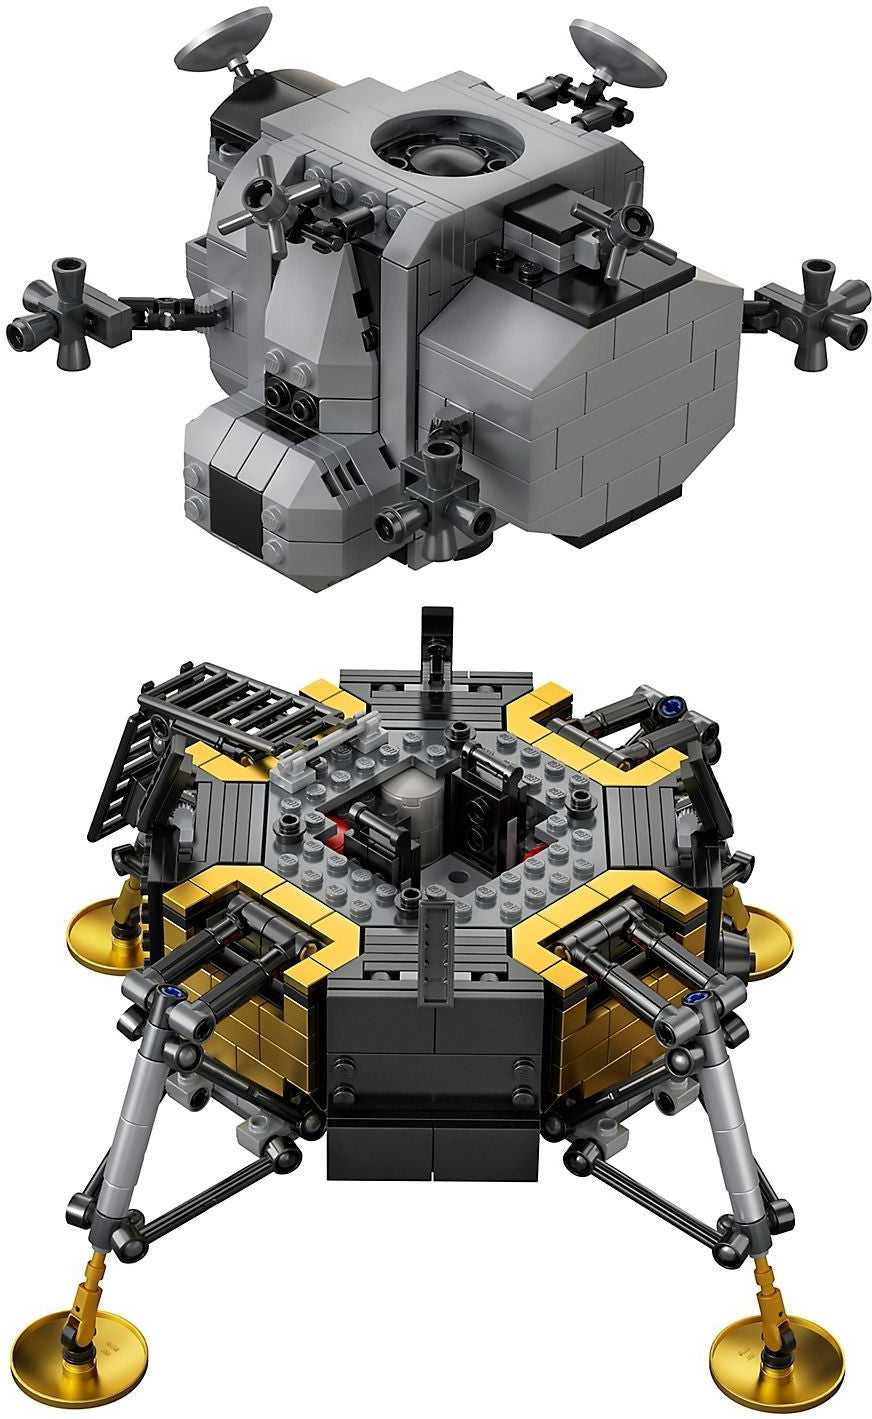 Lego Creator NASA Apollo 11 Lunar Lander 10266 - Albagame